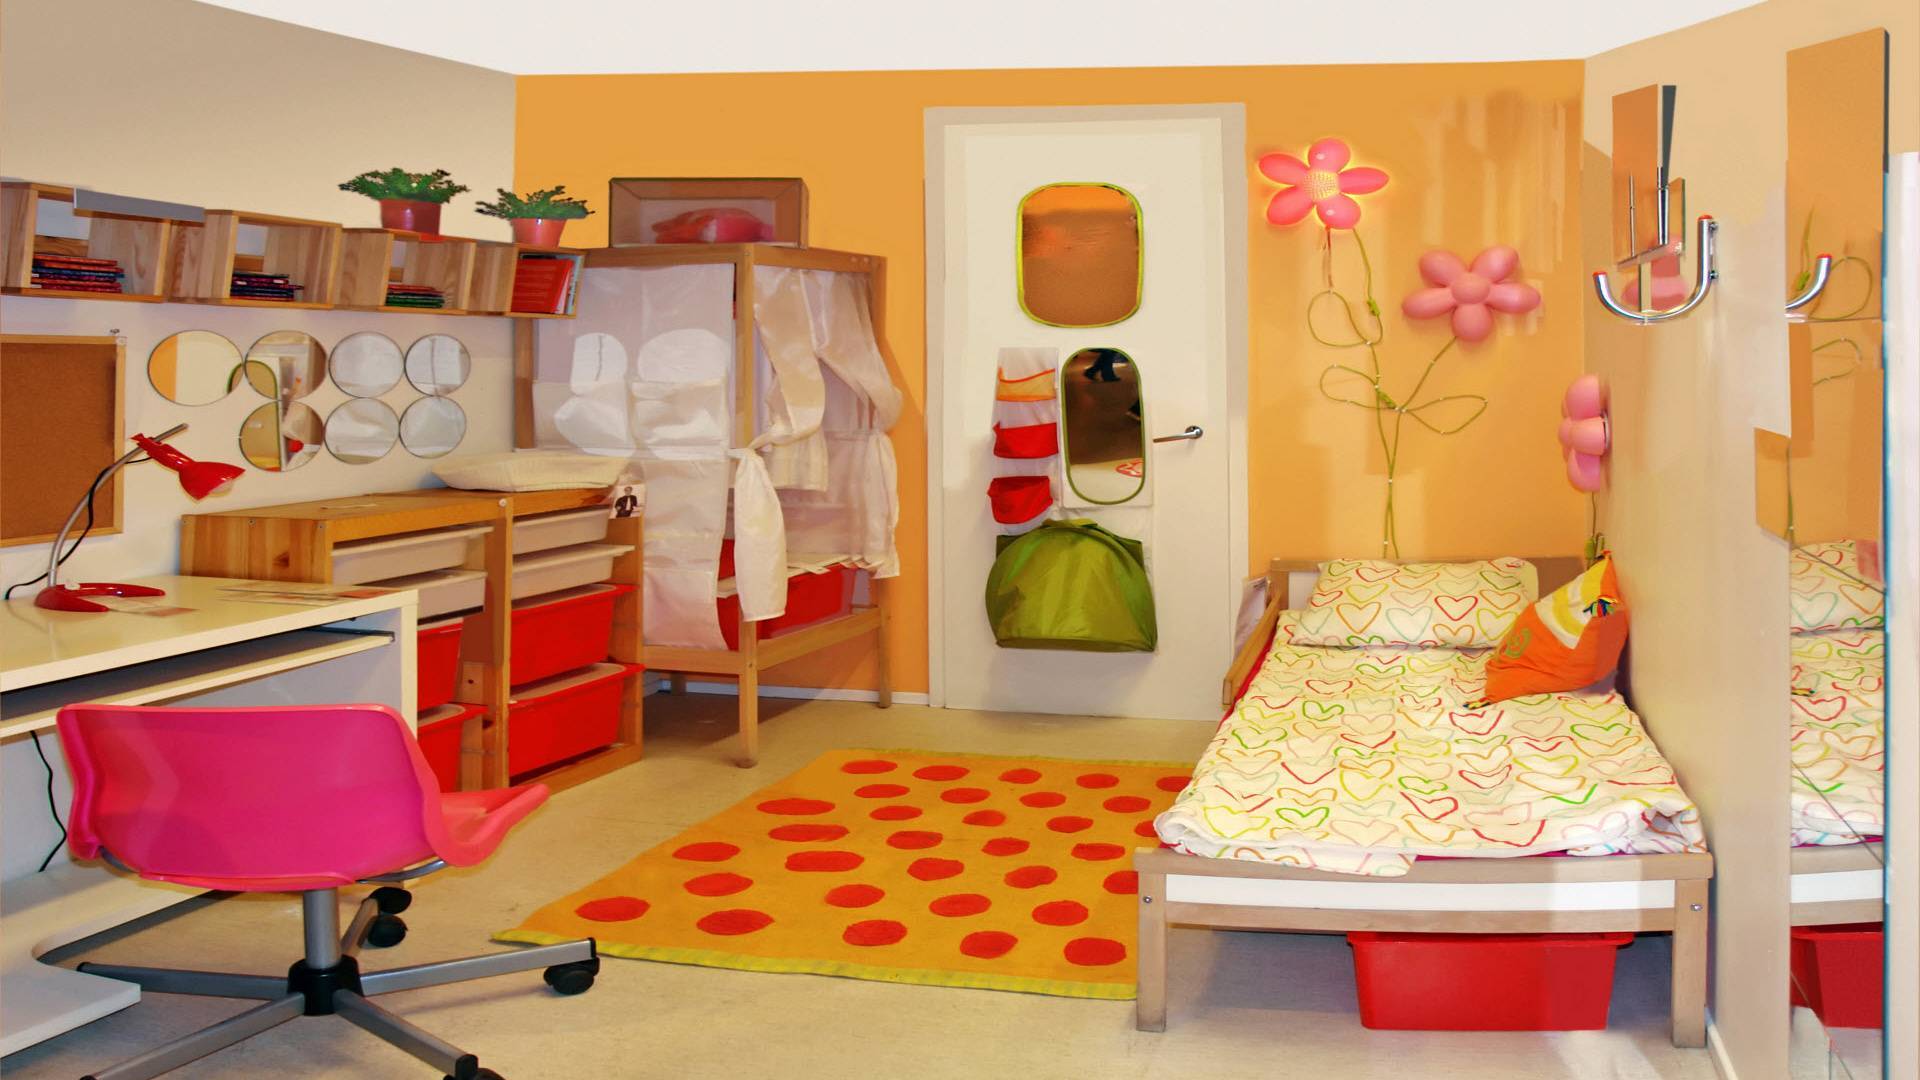 Как обустроить детскую комнату - идеи и советы (32 реальных фото + видео)